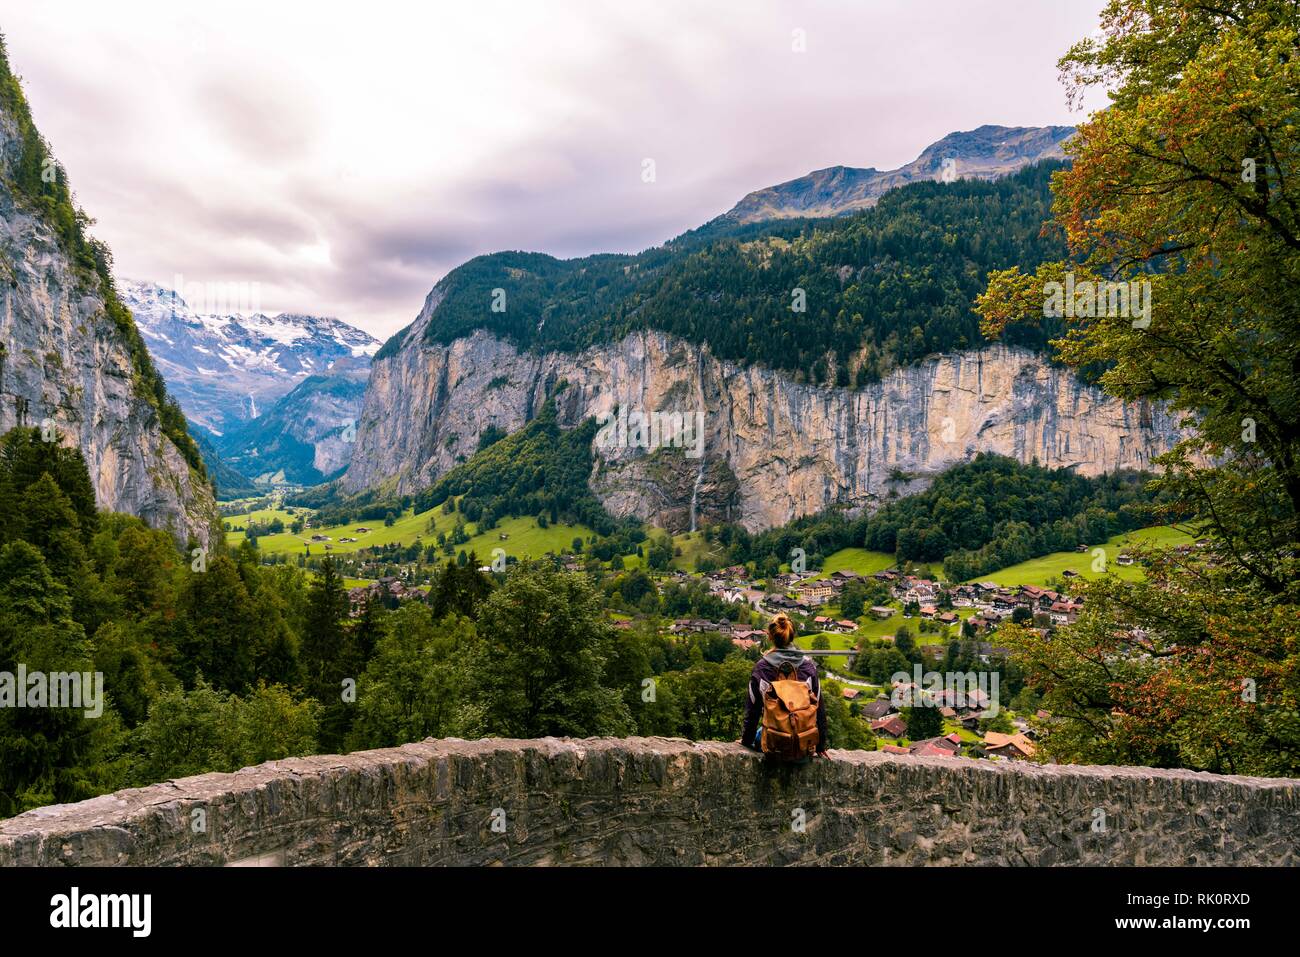 La vallée de Lauterbrunnen, près d'Interlaken dans l'Oberland Bernois, Suisse. Hipster girl sits et profiter de la vue. Banque D'Images